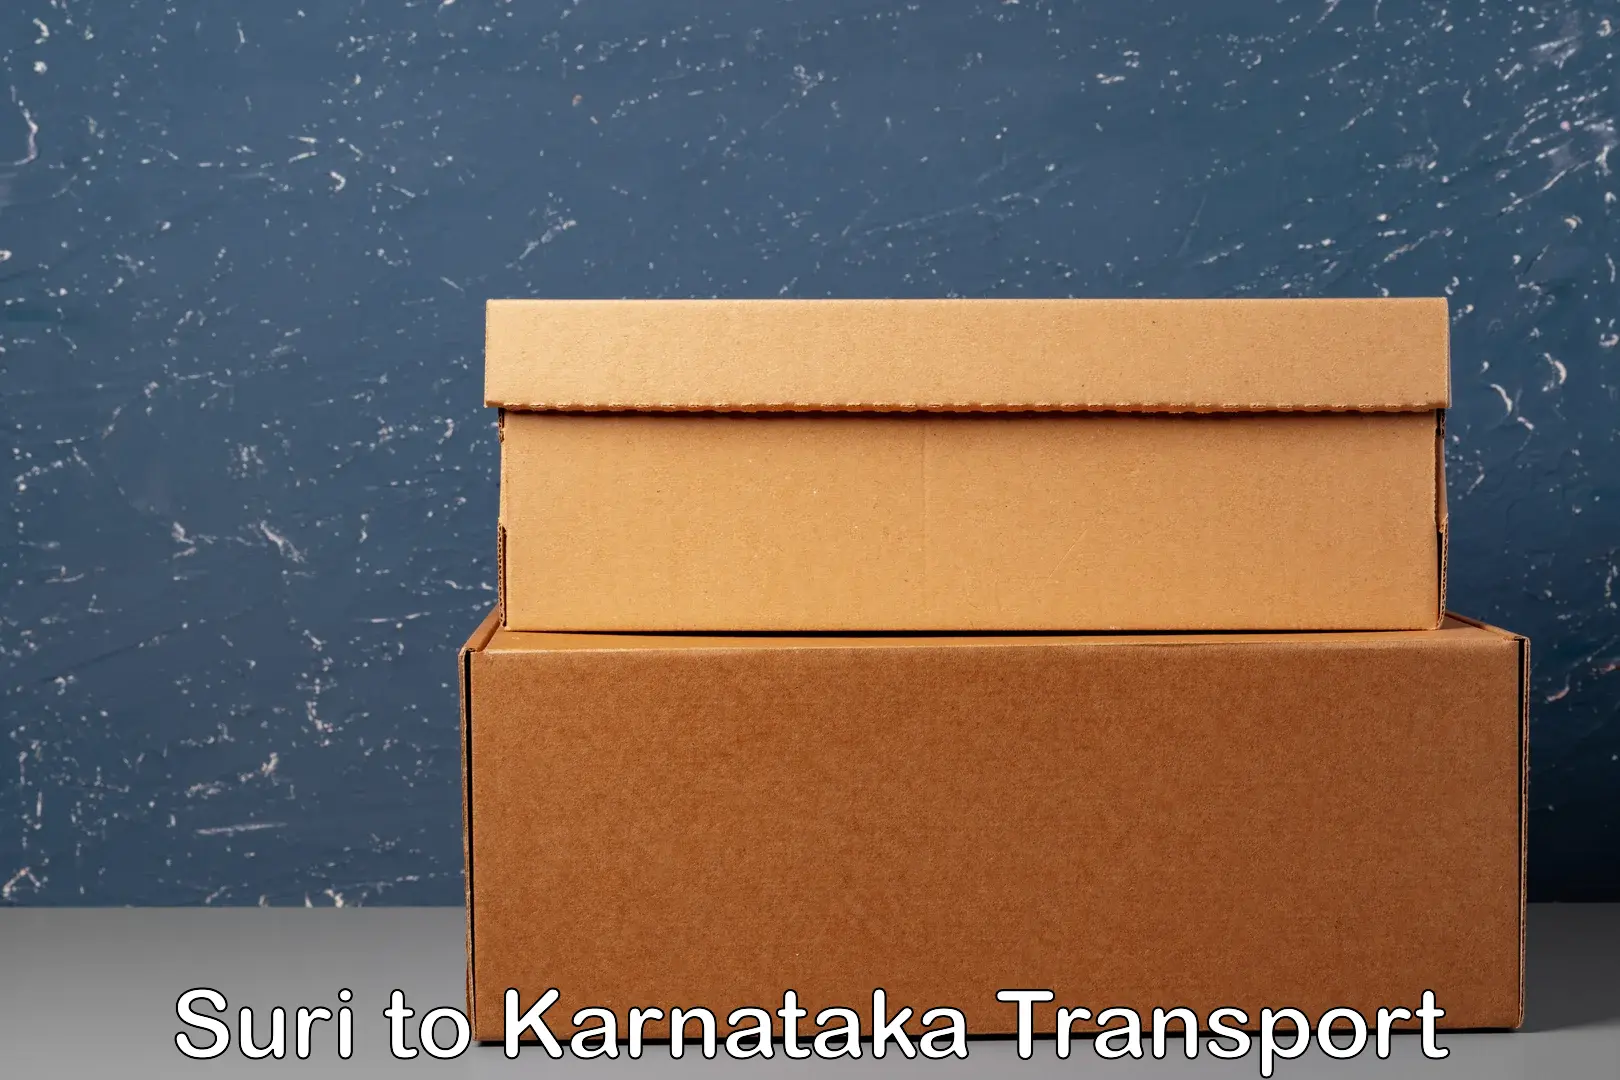 Truck transport companies in India Suri to Nipani